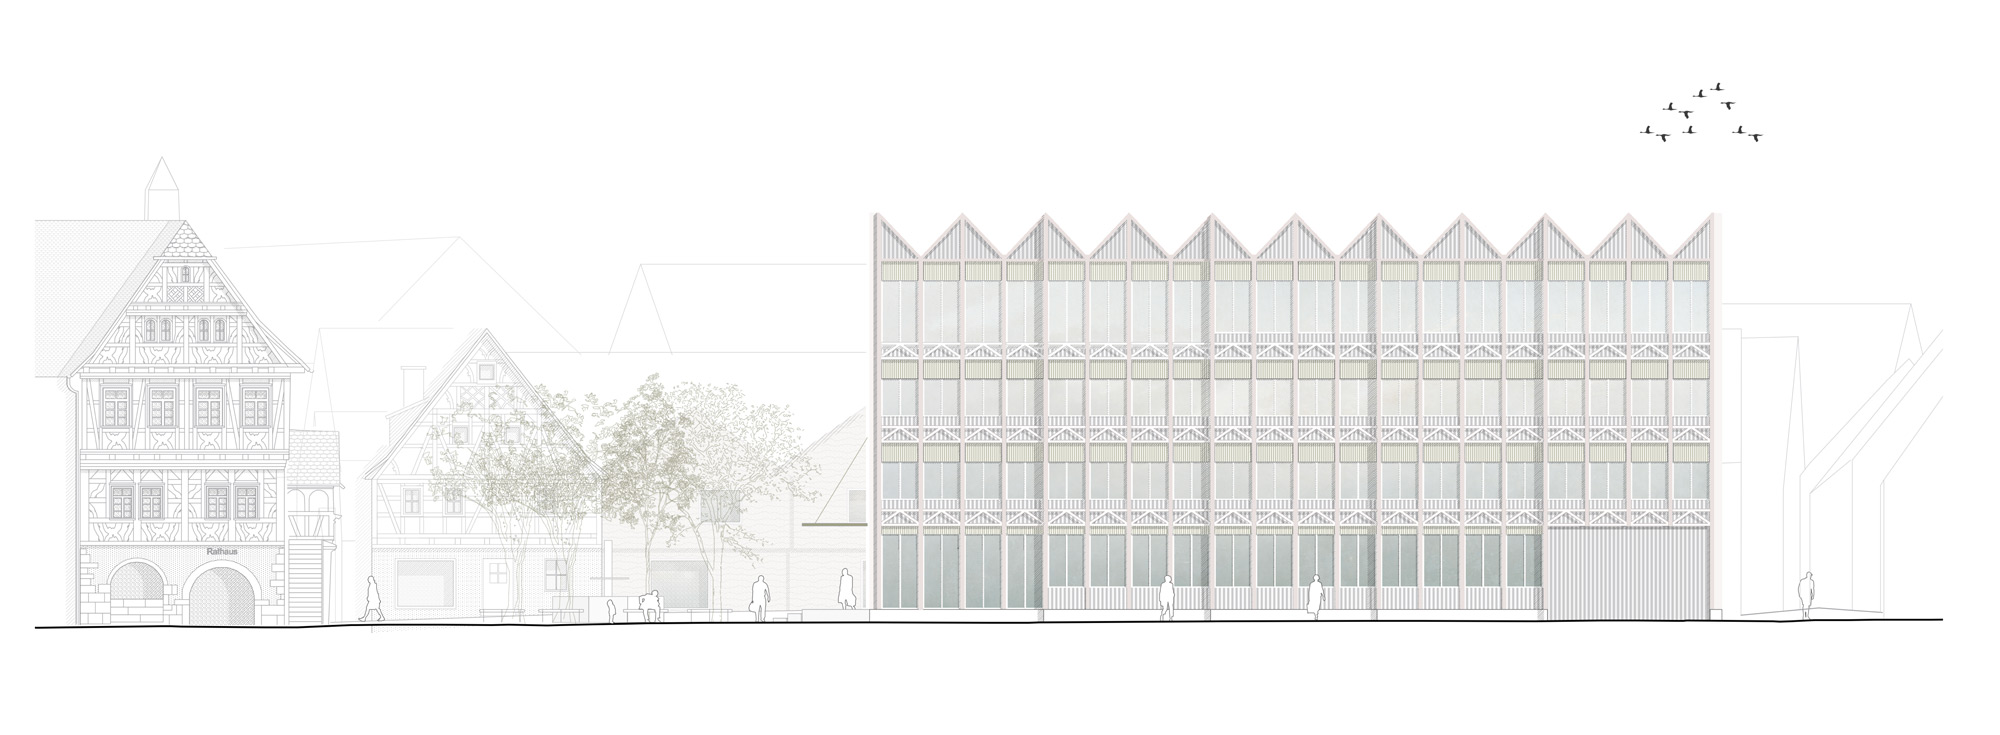 Wettbewerb | Neubau Rathaus und Gestaltung Murrterrassen | Steinheim